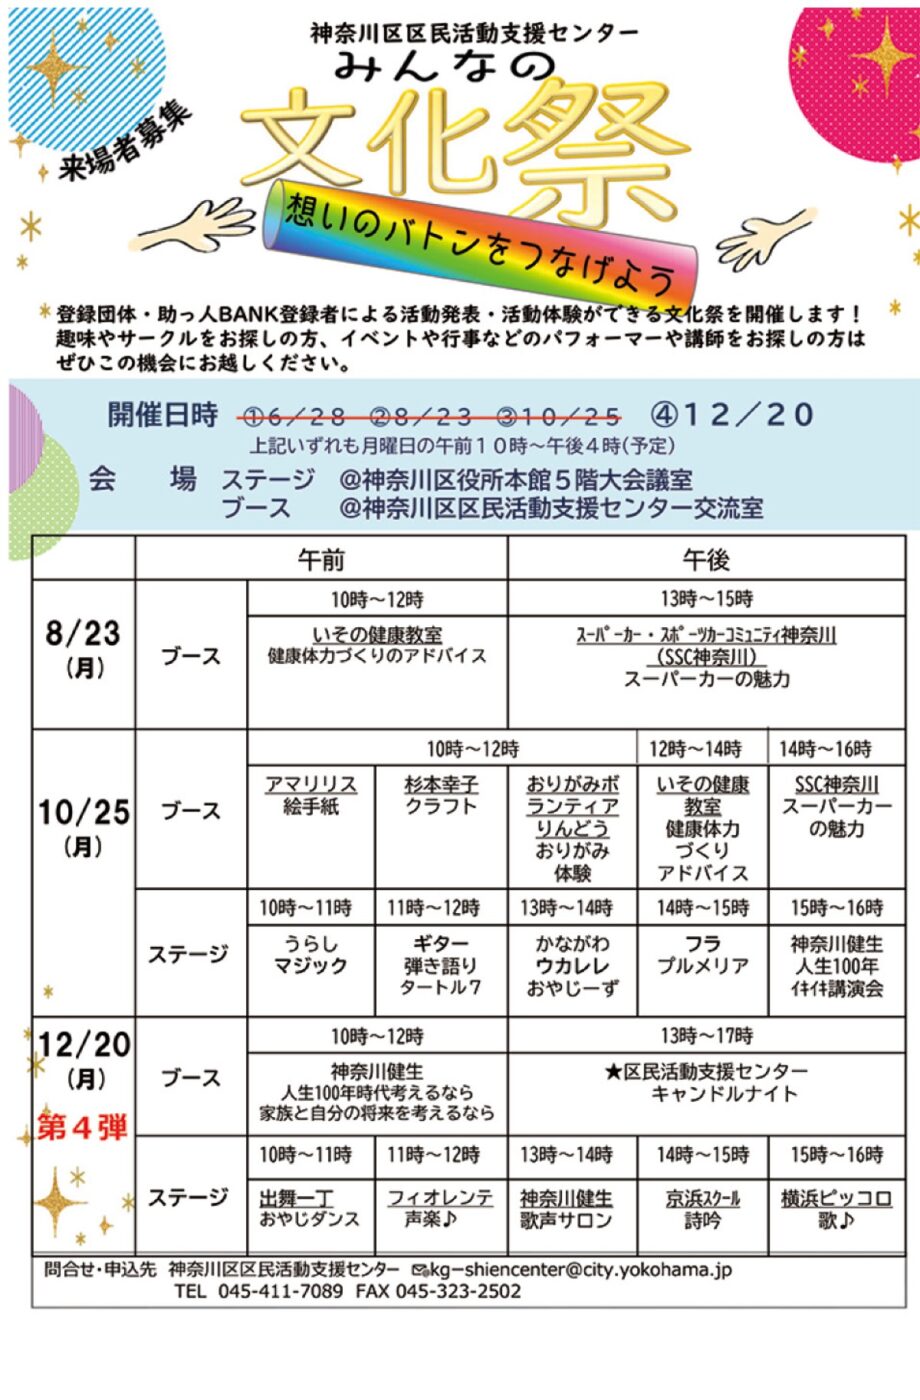 【横浜市神奈川区】演奏や講演楽しむ「みんなの文化祭」 区内団体が活動発表